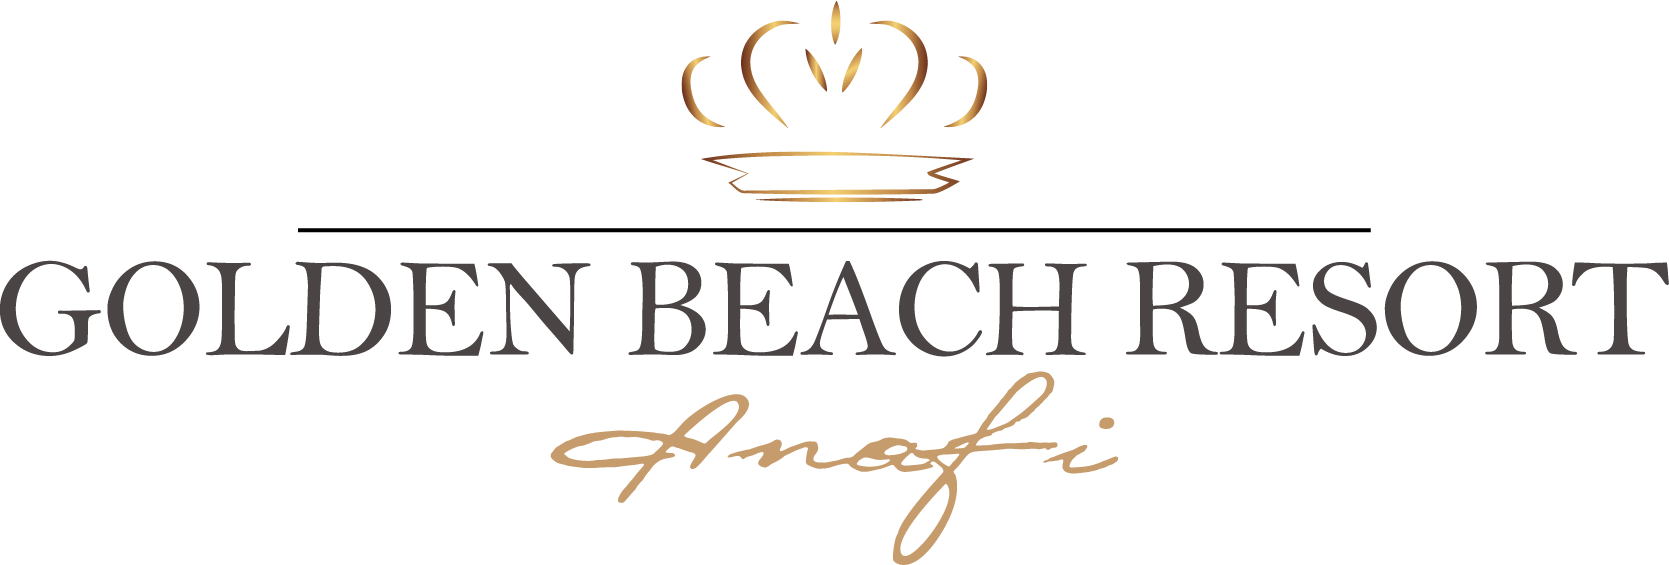 Golden Beach Resort logo